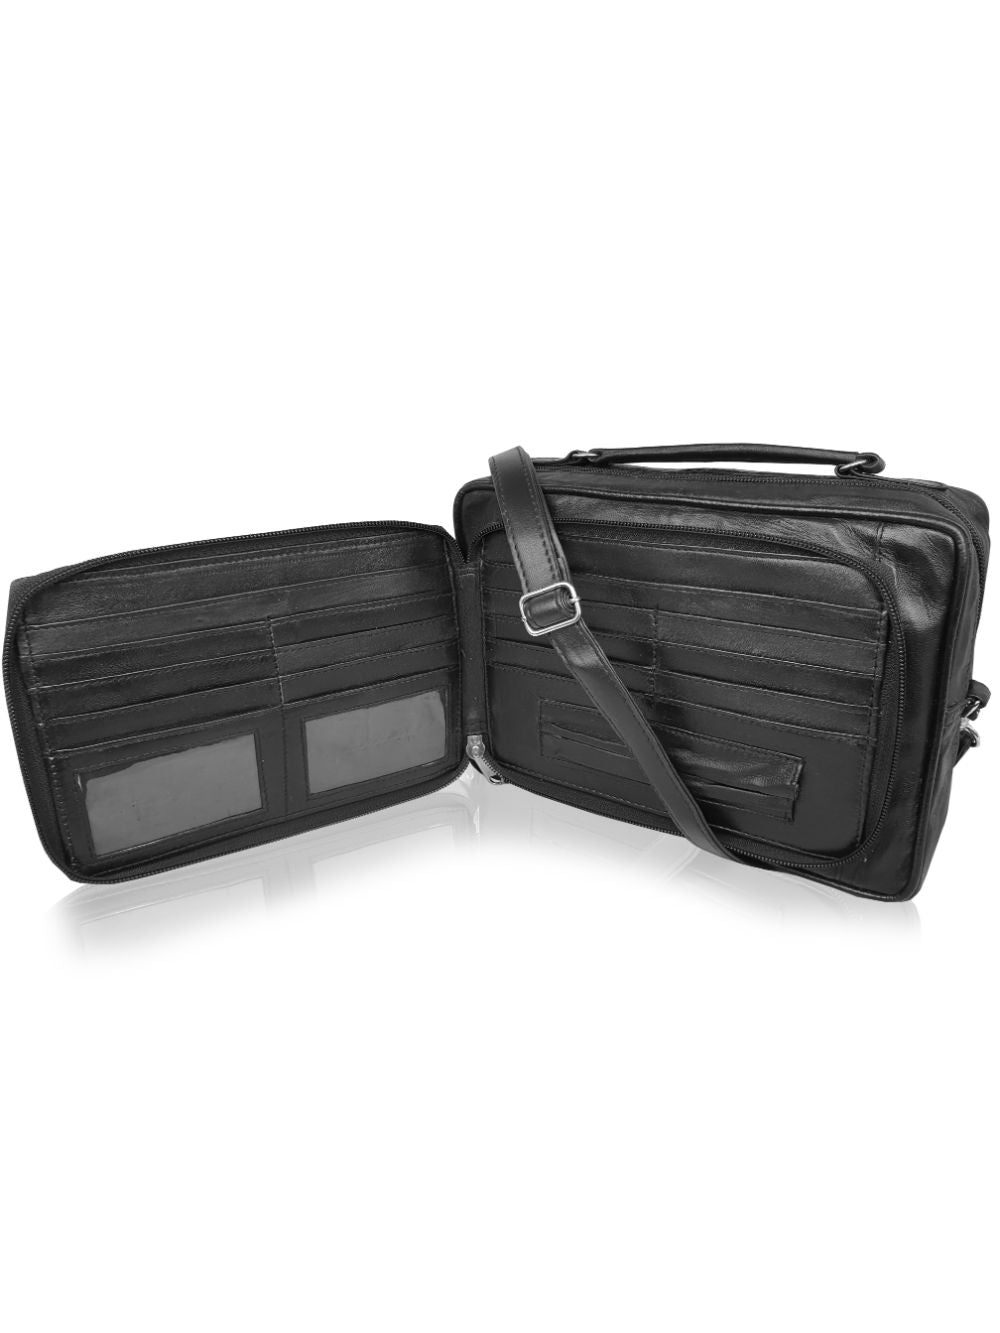 Roamlite Travel Orginizer bag Black Leather RL521 open 2